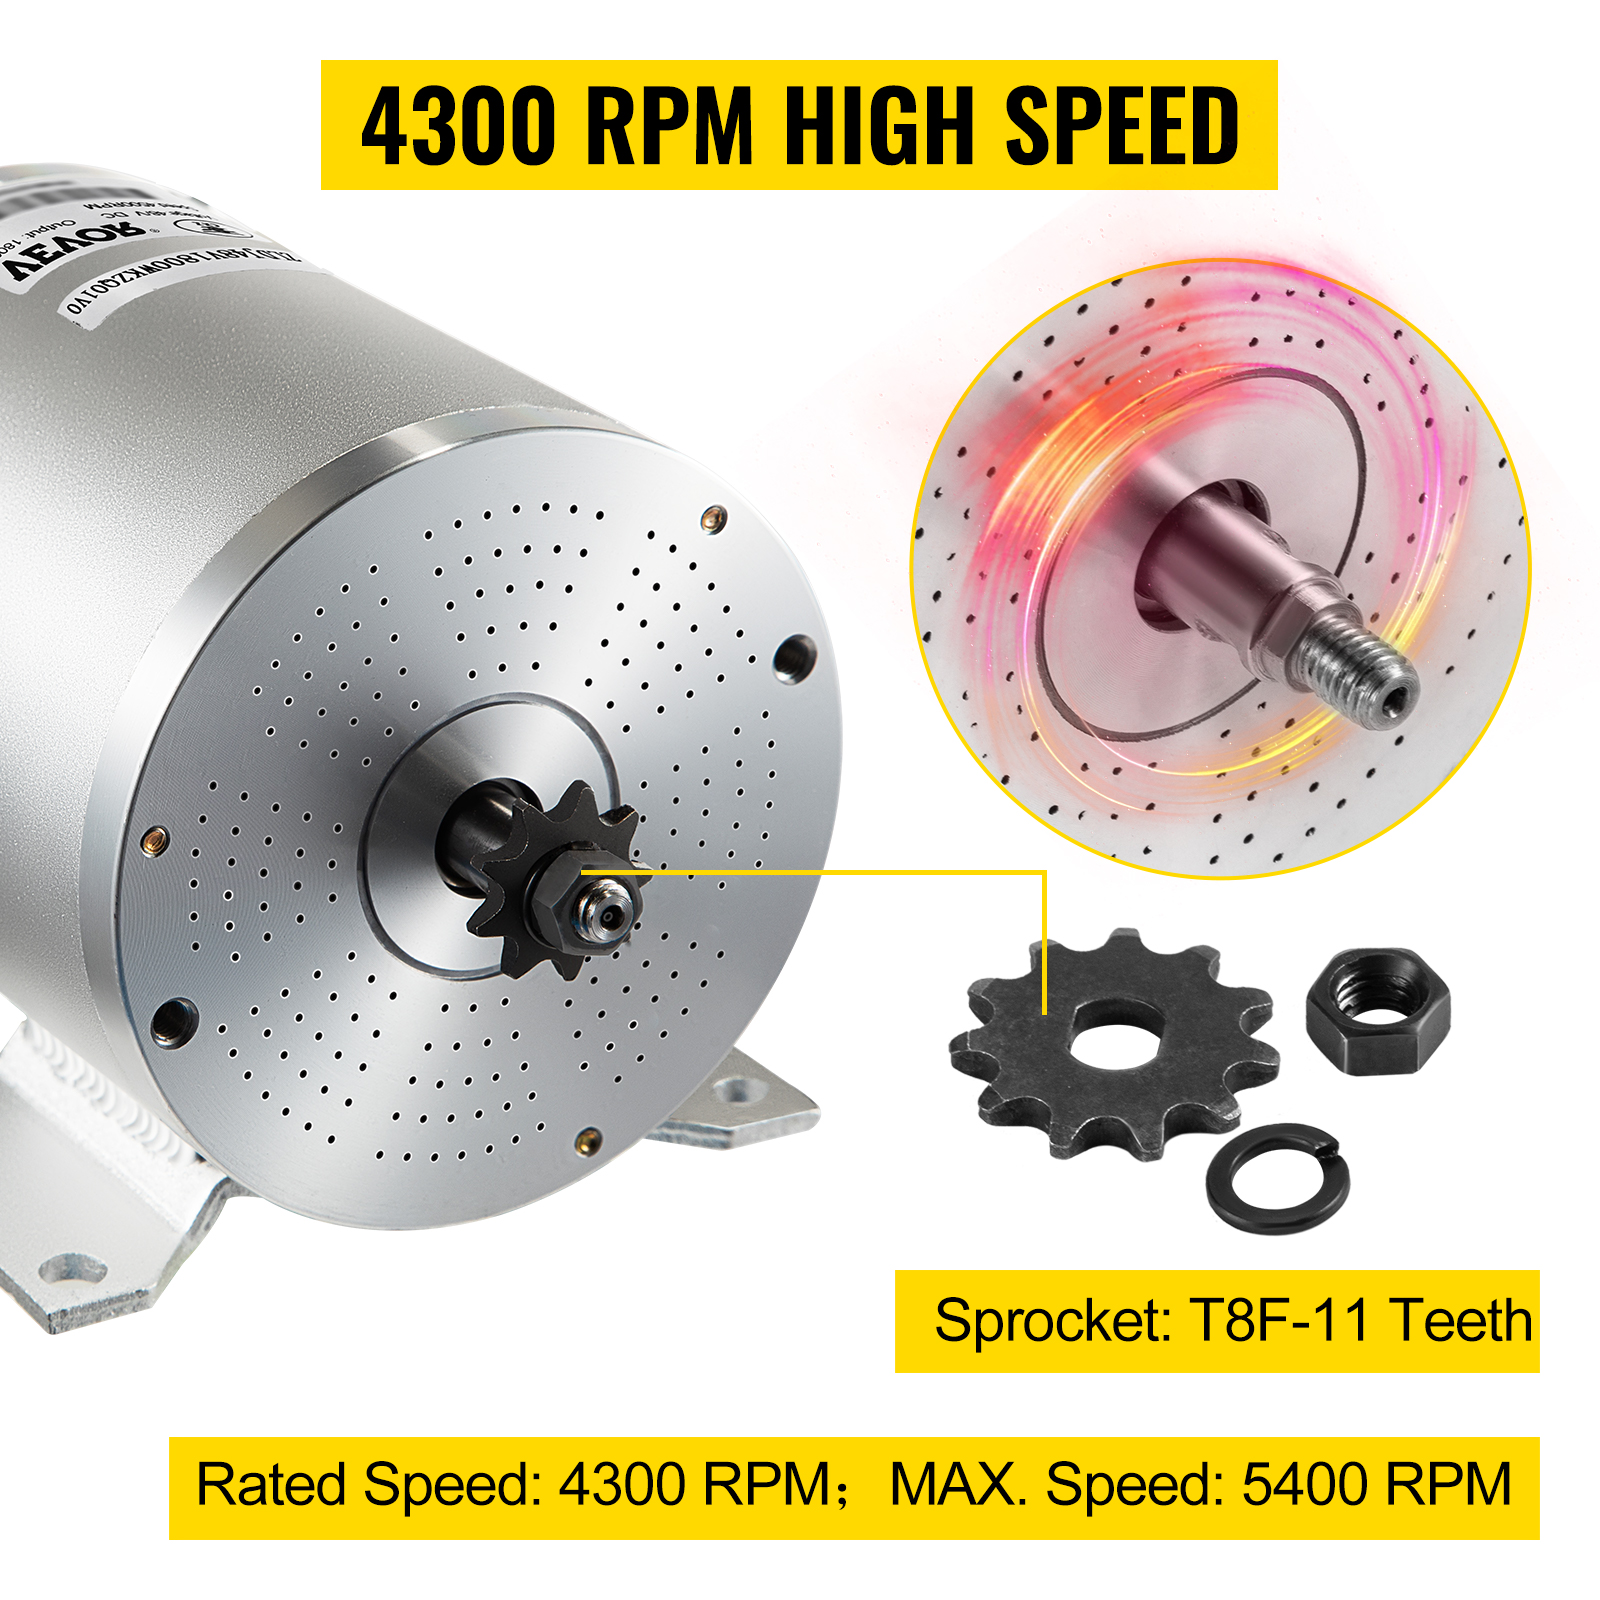 Llave de impacto neumática 3/4 No-load speed:7000 rpm Max